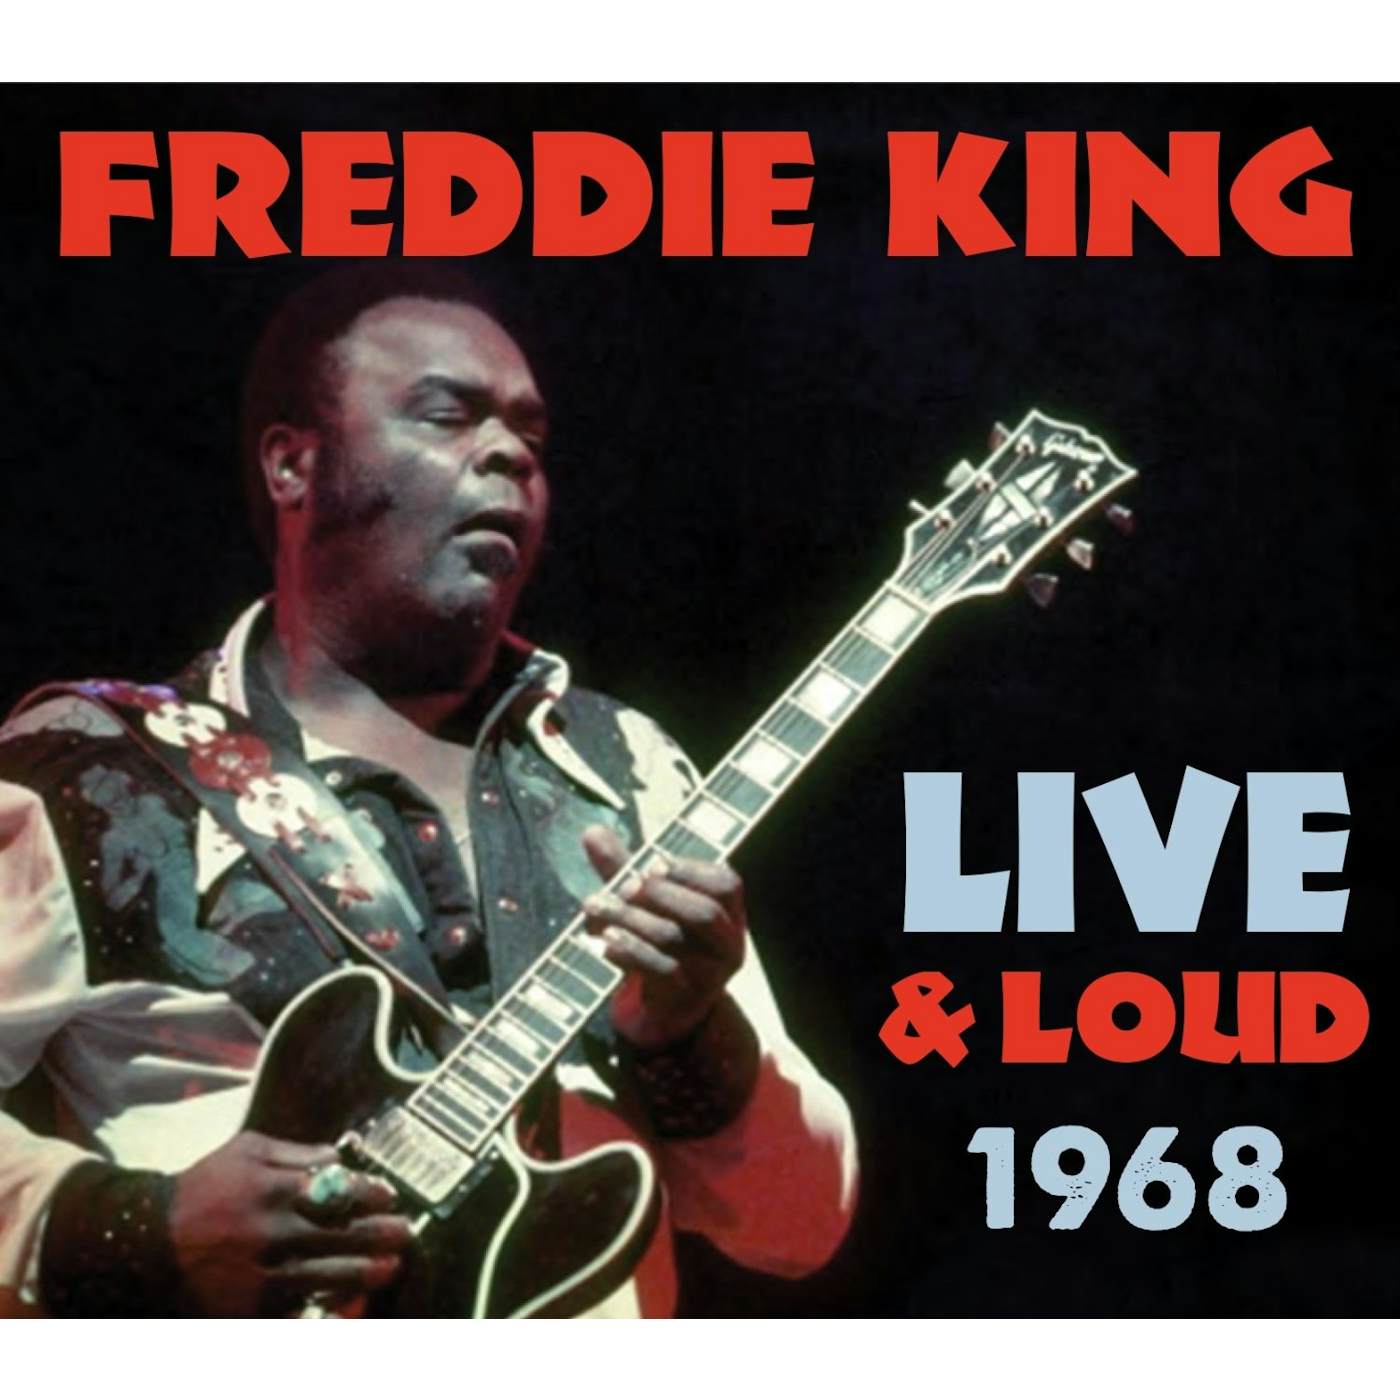 FREDDIE KING LIVE CD